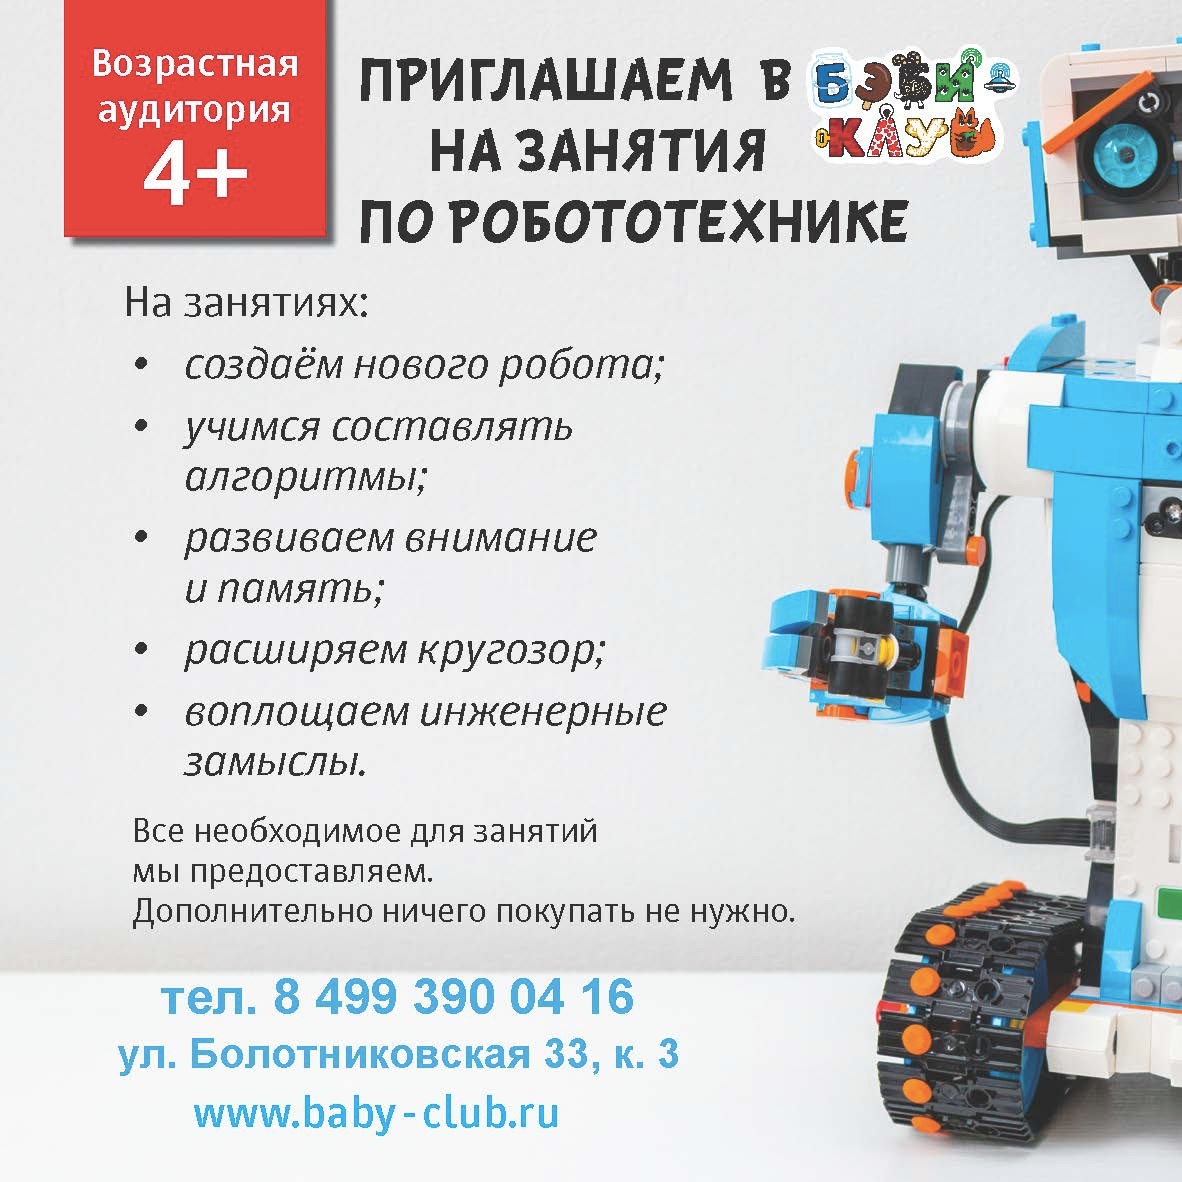 Робототехника стоимость. Робототехника объявление. Реклама Кружка робототехники. Реклама Кружка по робототехнике. Листовка робототехника.